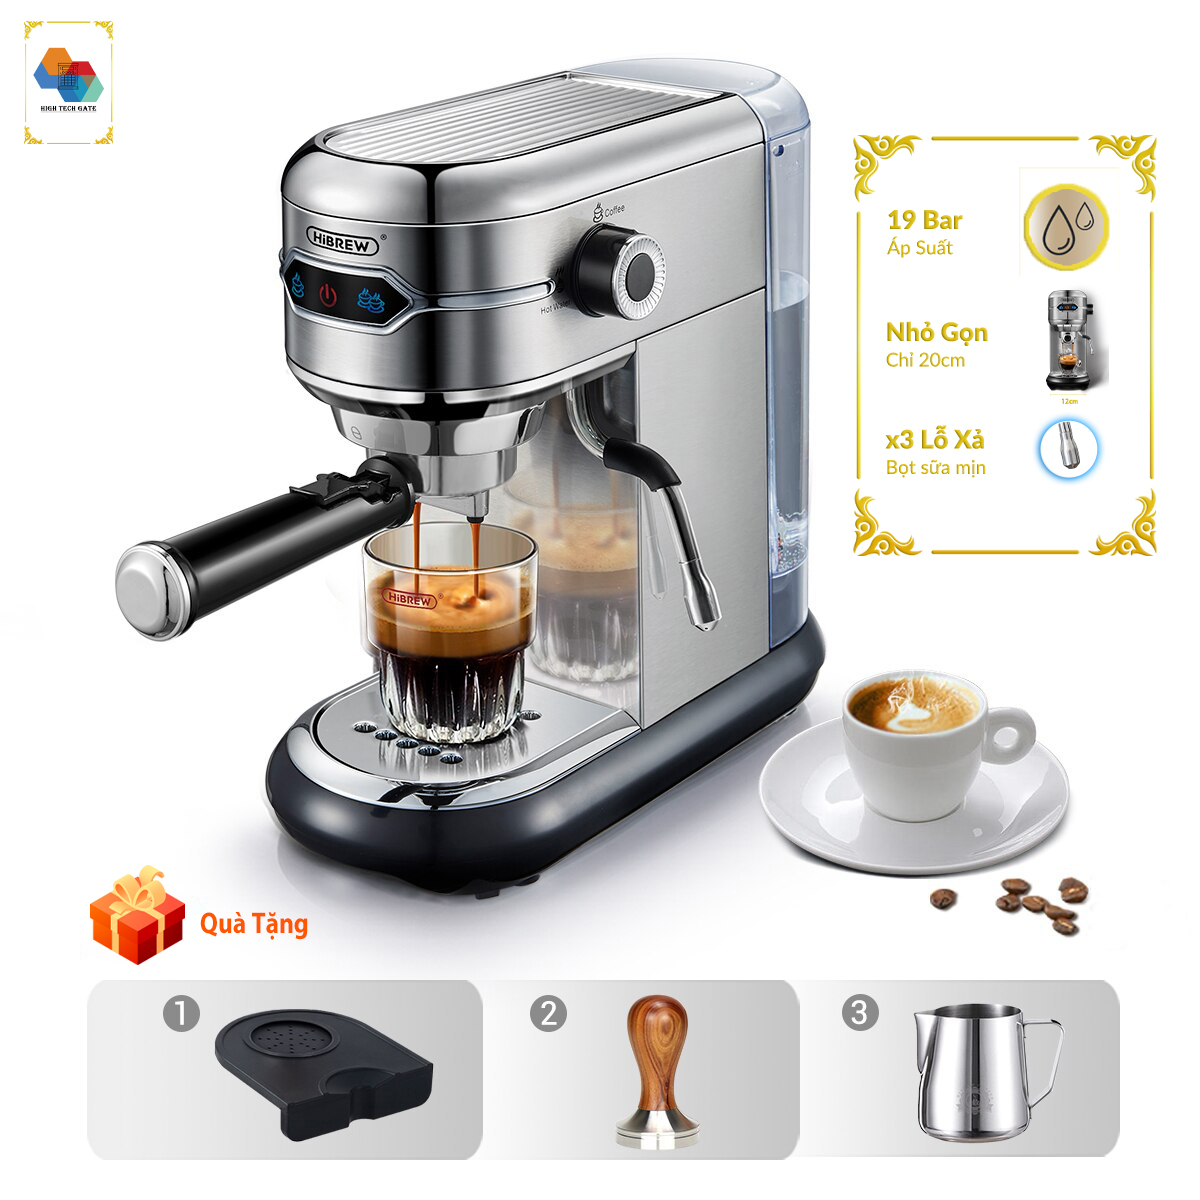 Máy pha cafe espresso tự động hibrew h11 siêu nhỏ gọn 12cm, công suất 1450w - ảnh sản phẩm 1